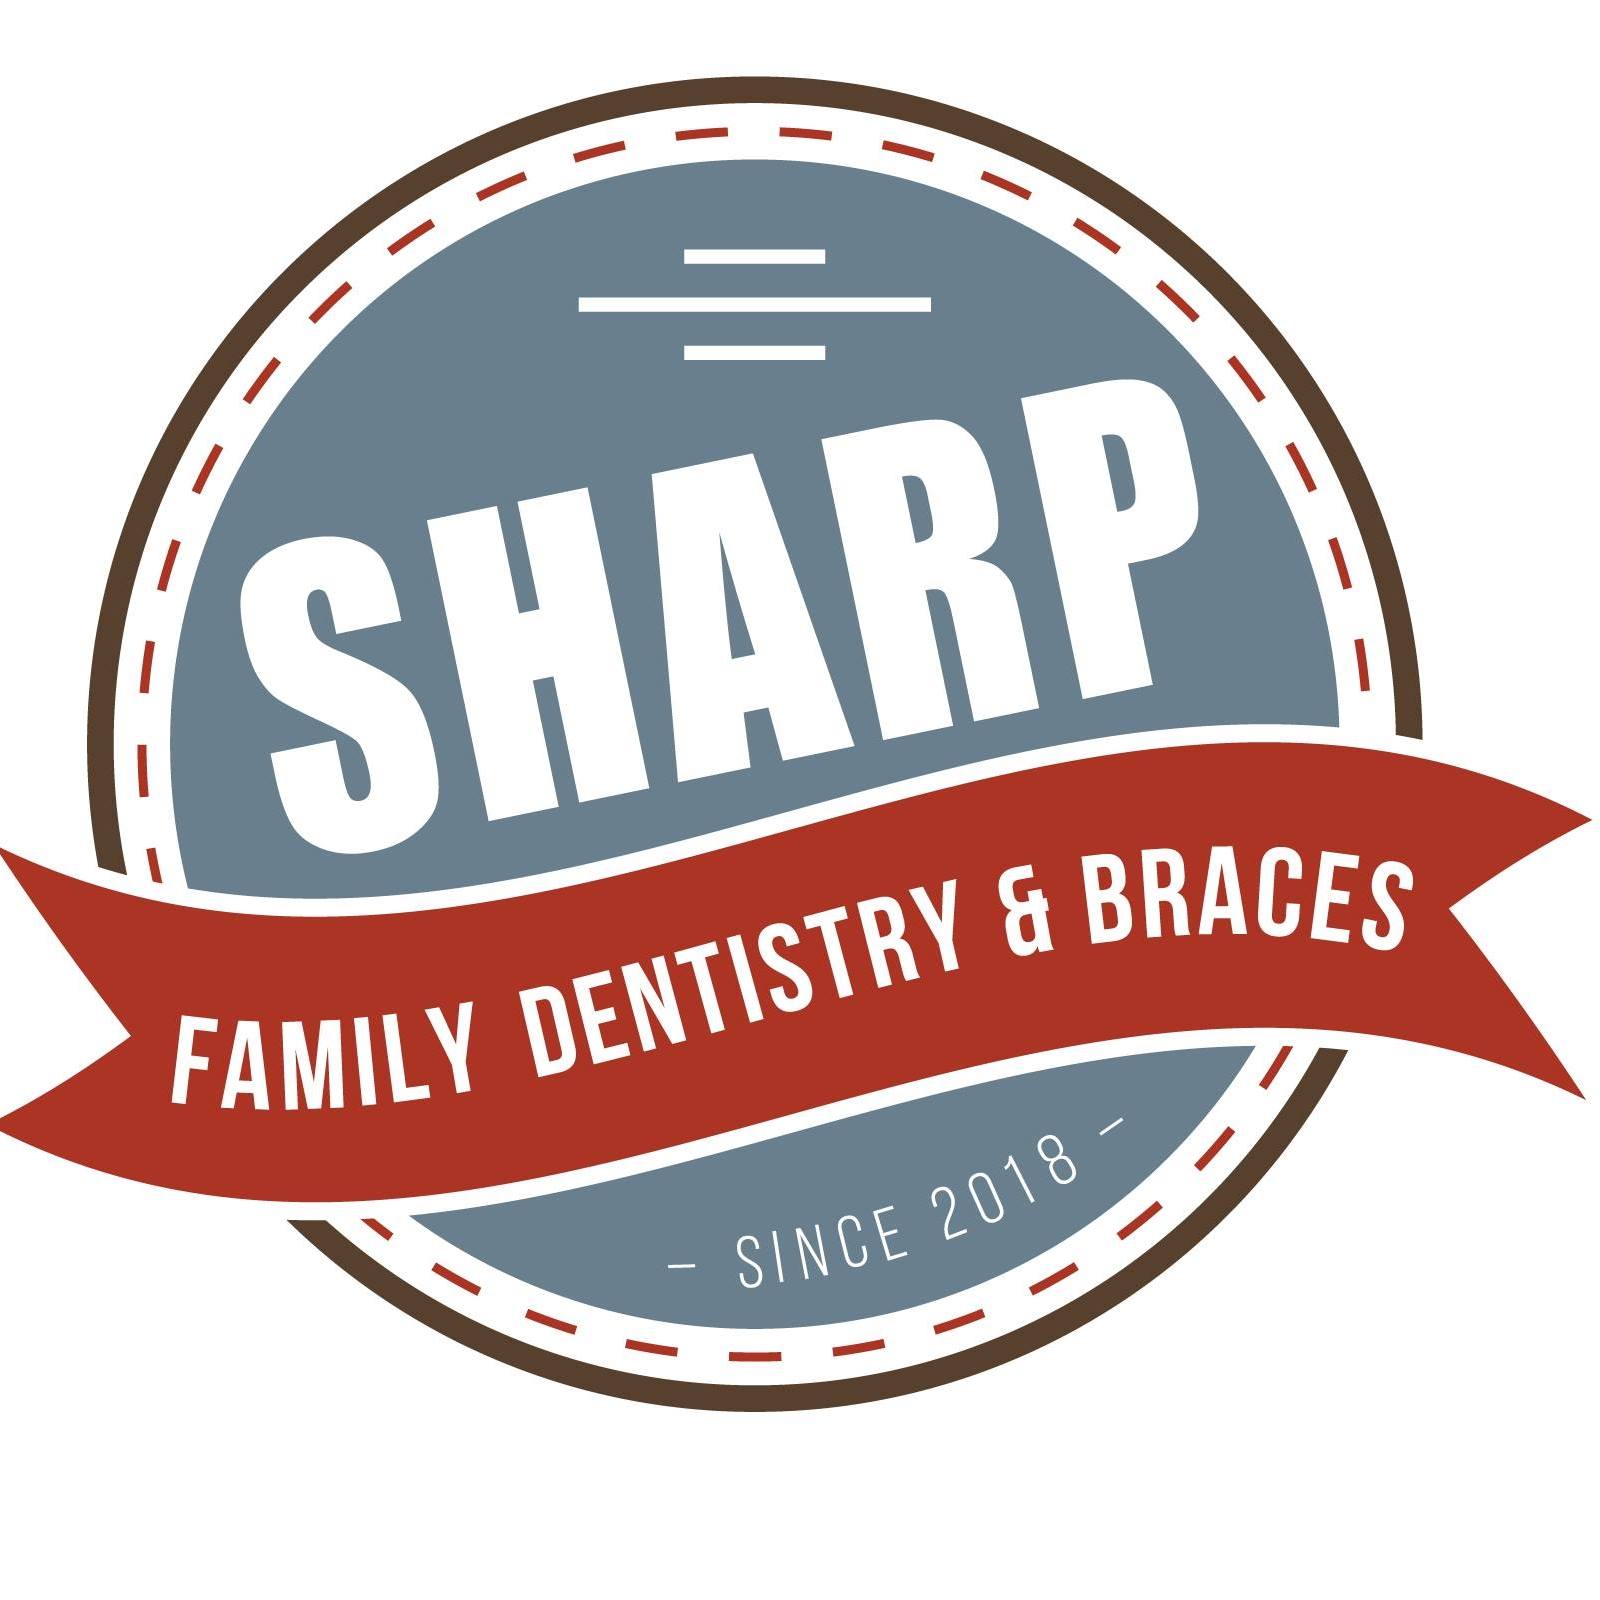 Company logo of Sharp Family Dentistry